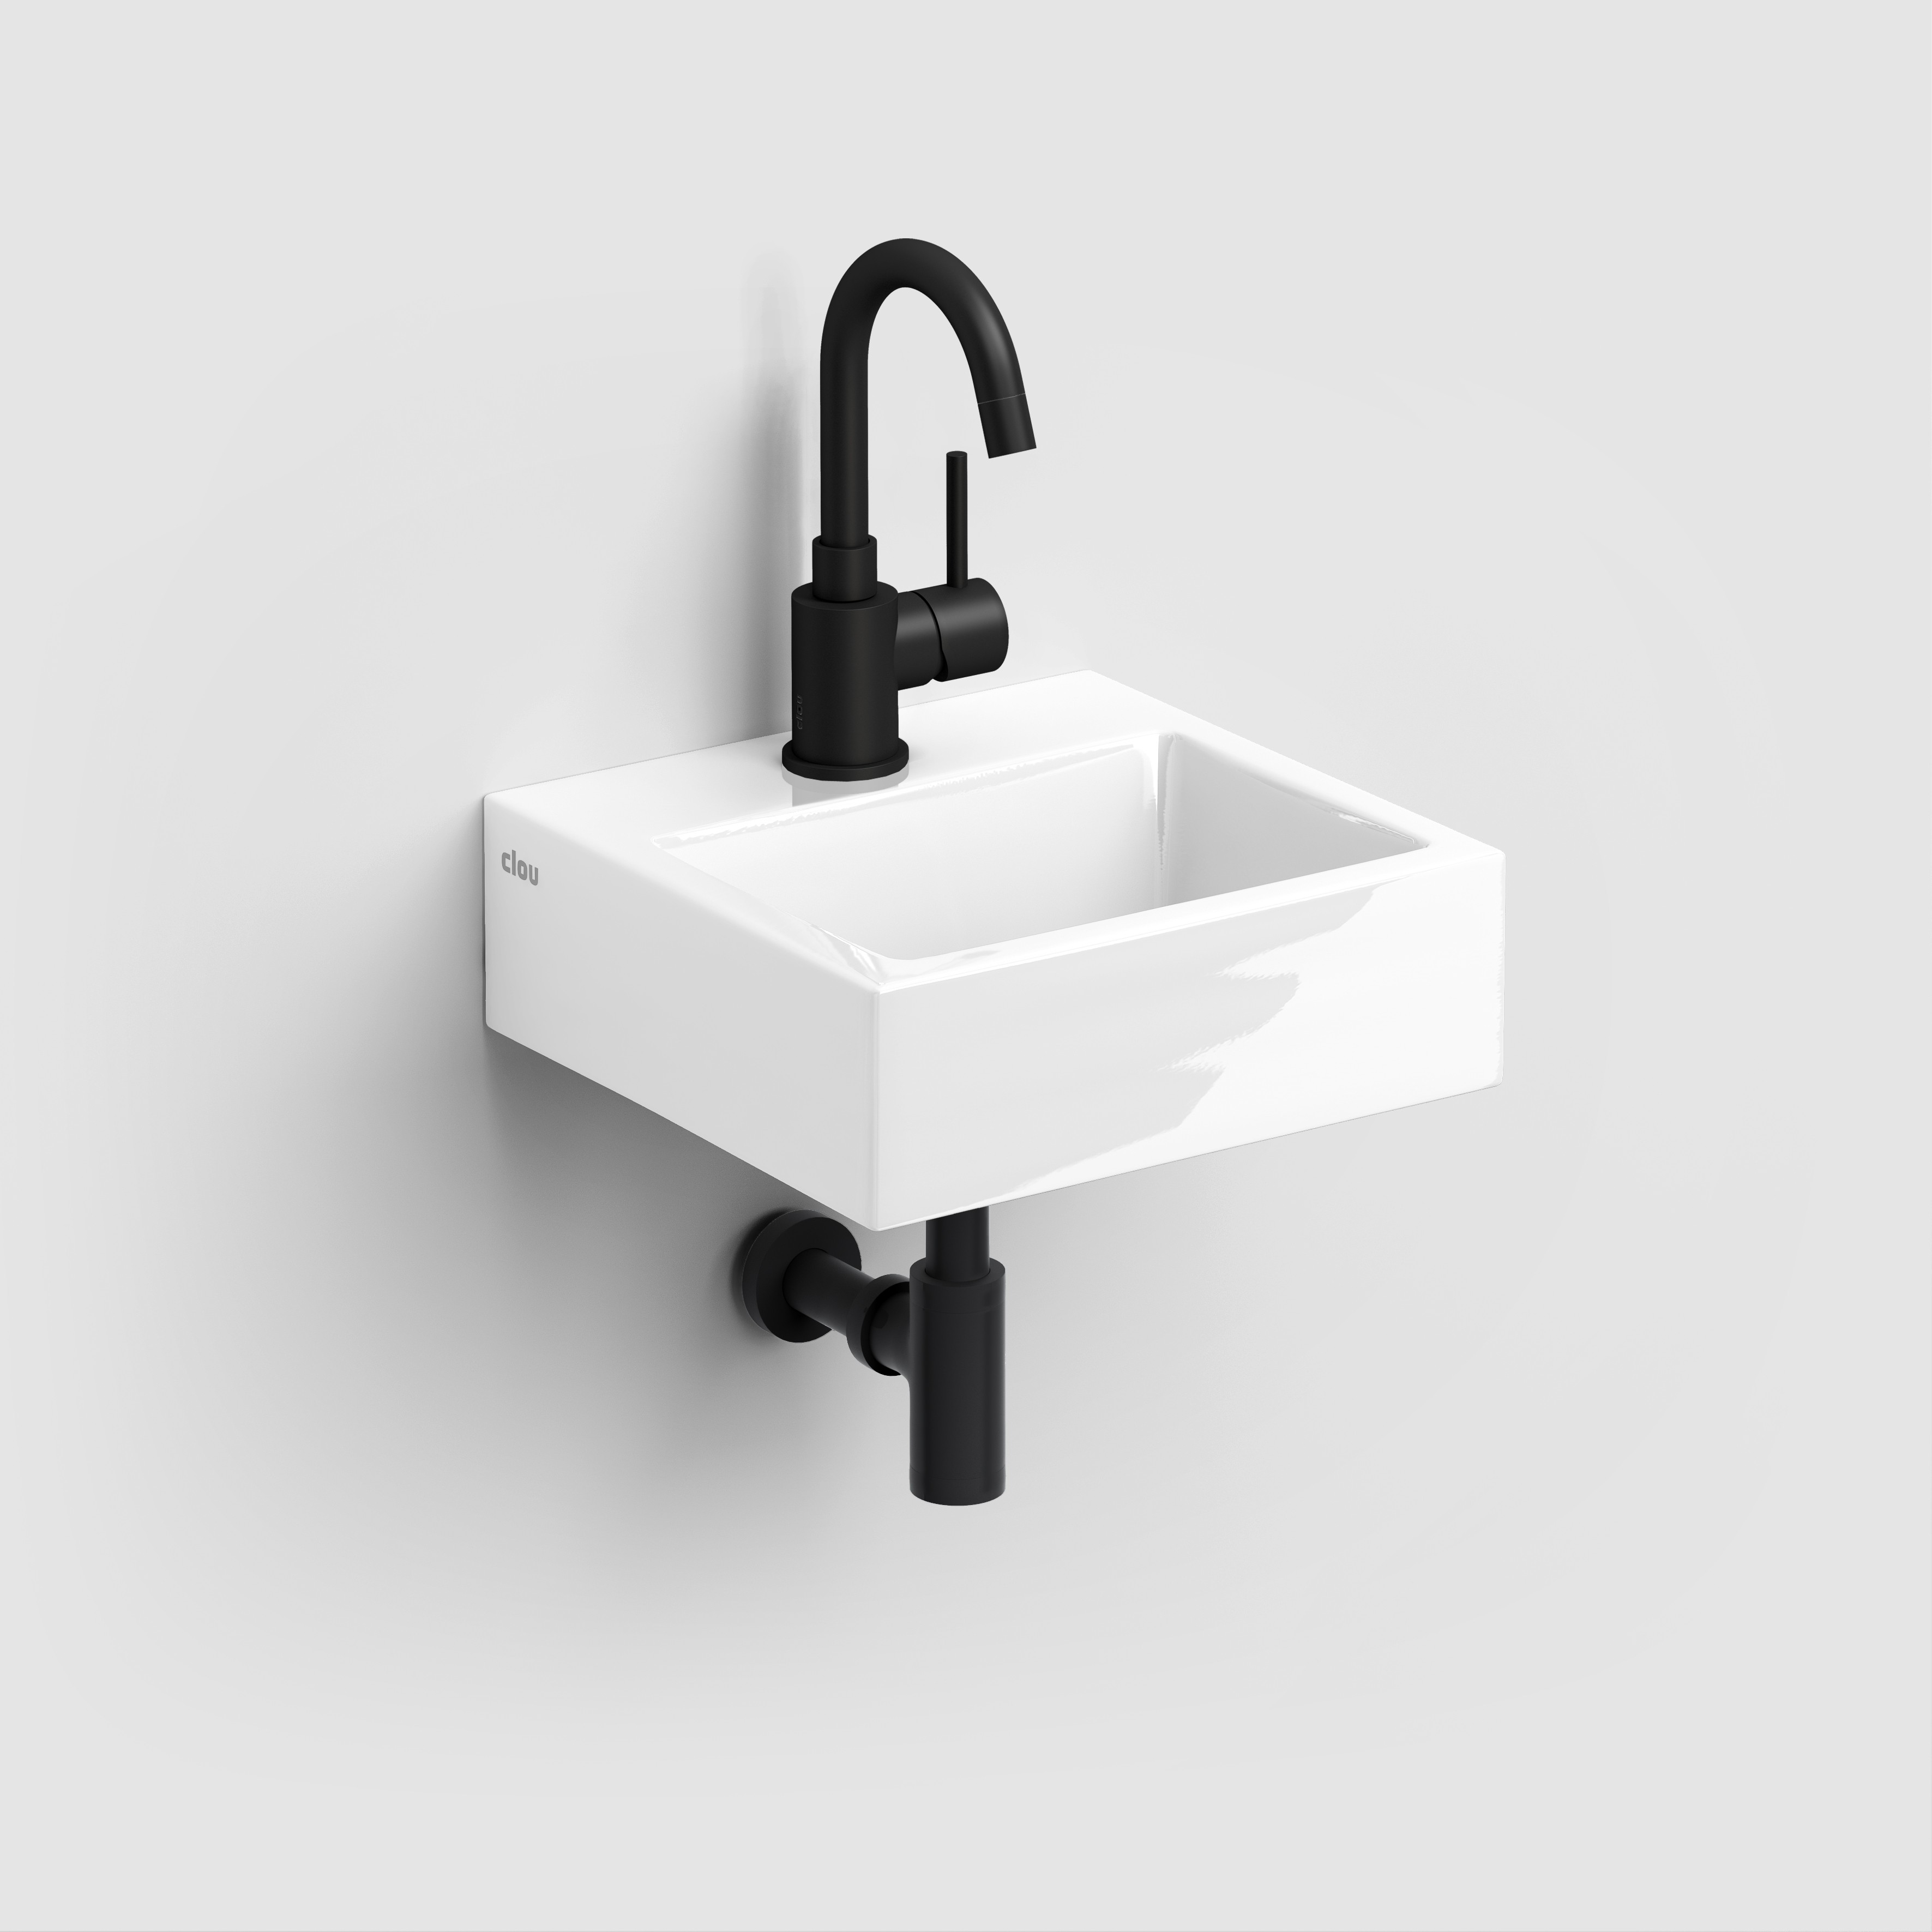 onderwijzen bladeren Aanvulling CL/03.03010 - Clou bath findings - Sanitair voor design badkamers